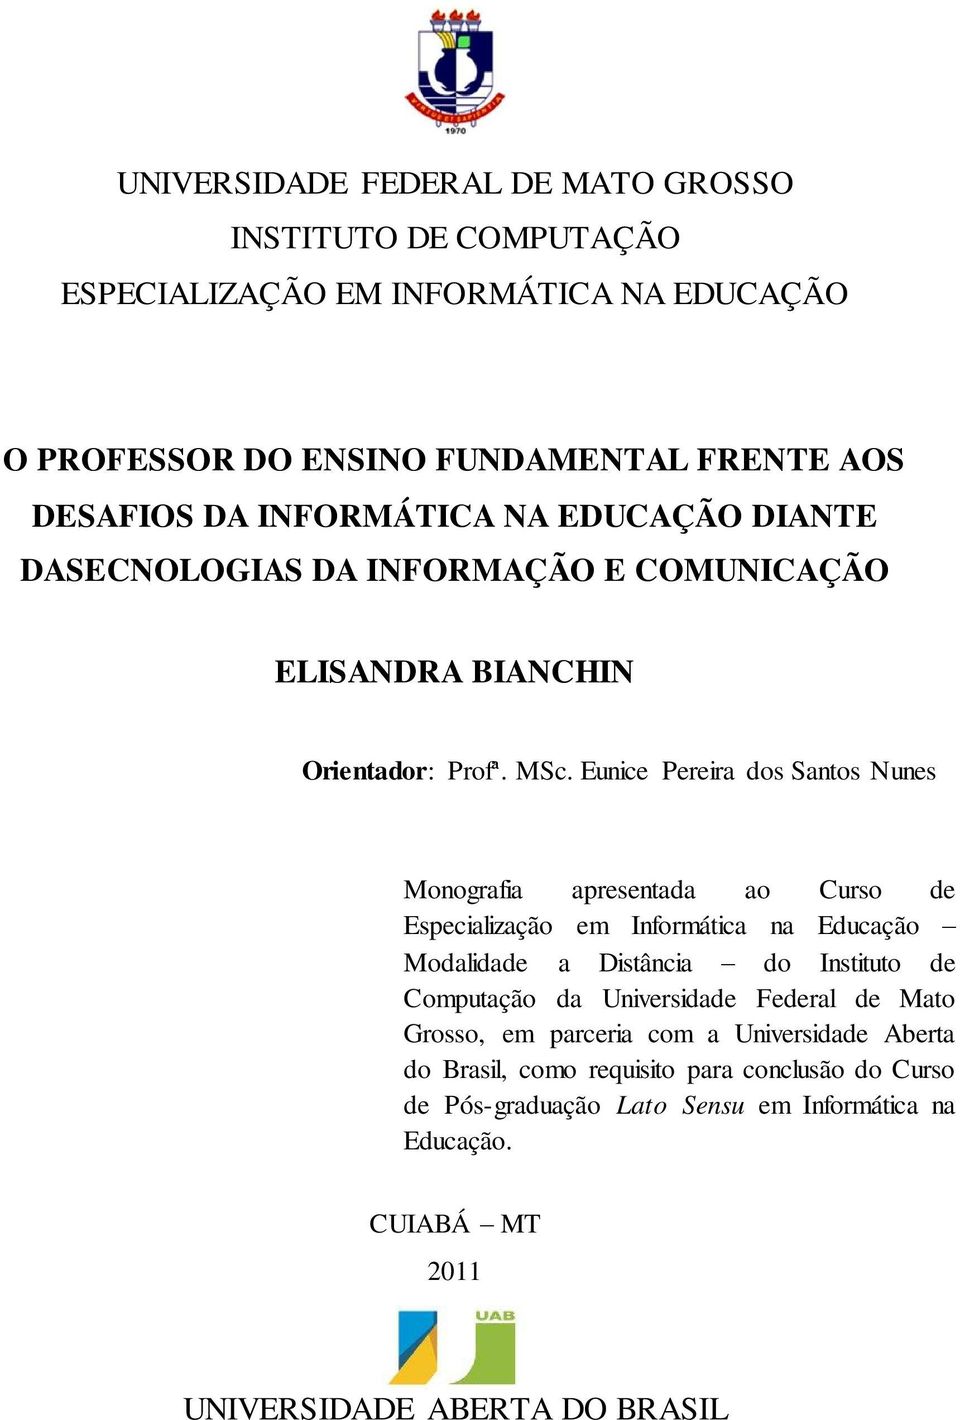 Eunice Pereira dos Santos Nunes Monografia apresentada ao Curso de Especialização em Informática na Educação Modalidade a Distância do Instituto de Computação da